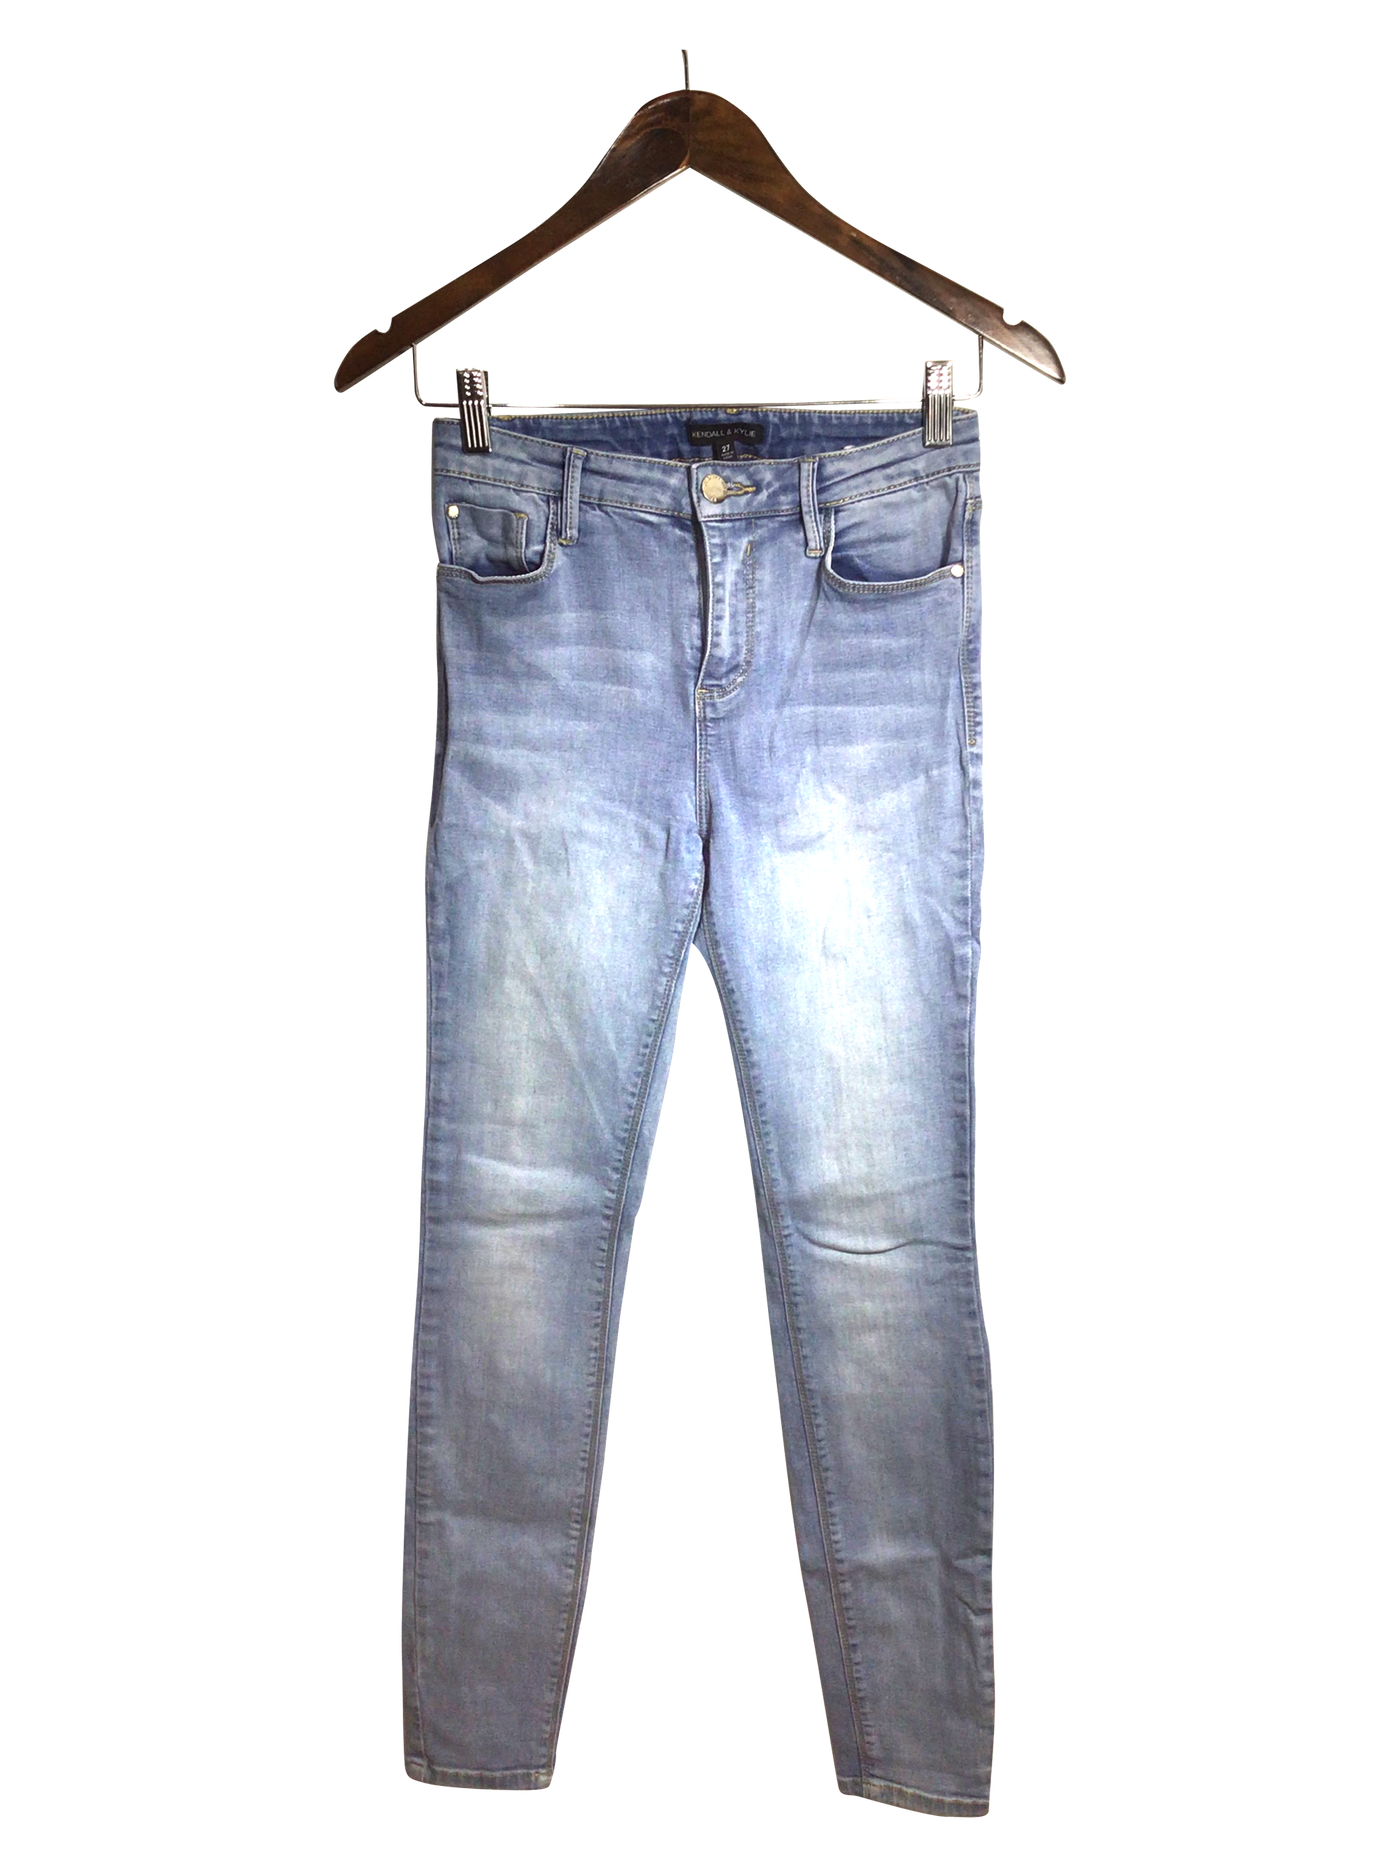 KENDALL & KYLIE Women Straight-Legged Jeans Regular fit in Blue - Size 27 | 8.79 $ KOOP